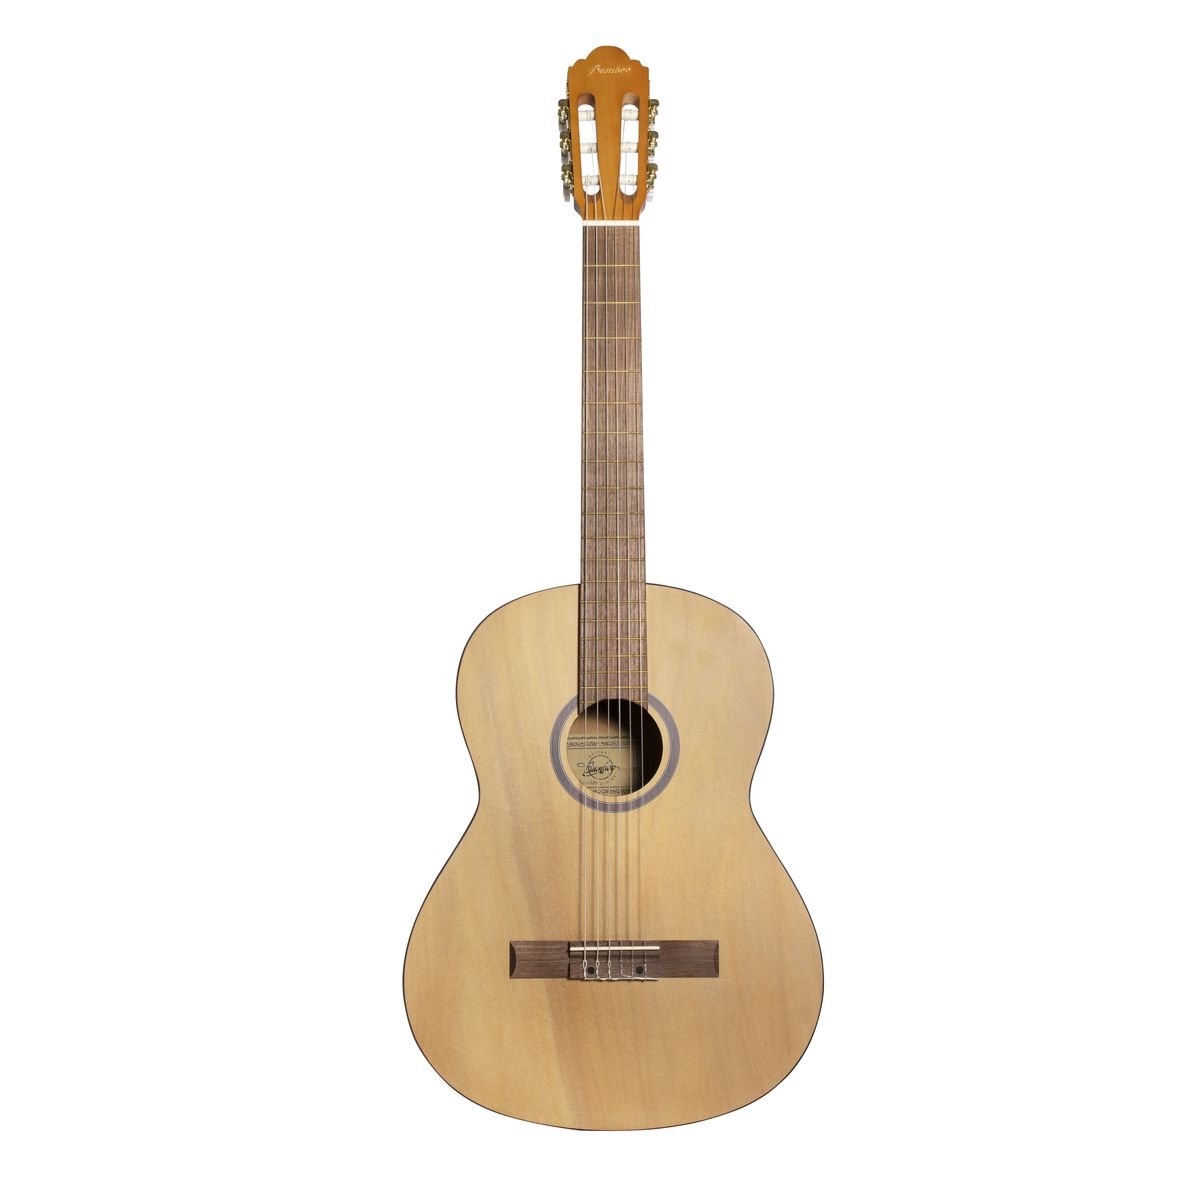 Bamboo GCI-39 Pro классическая гитара, ель/ орех, цвет натуральный